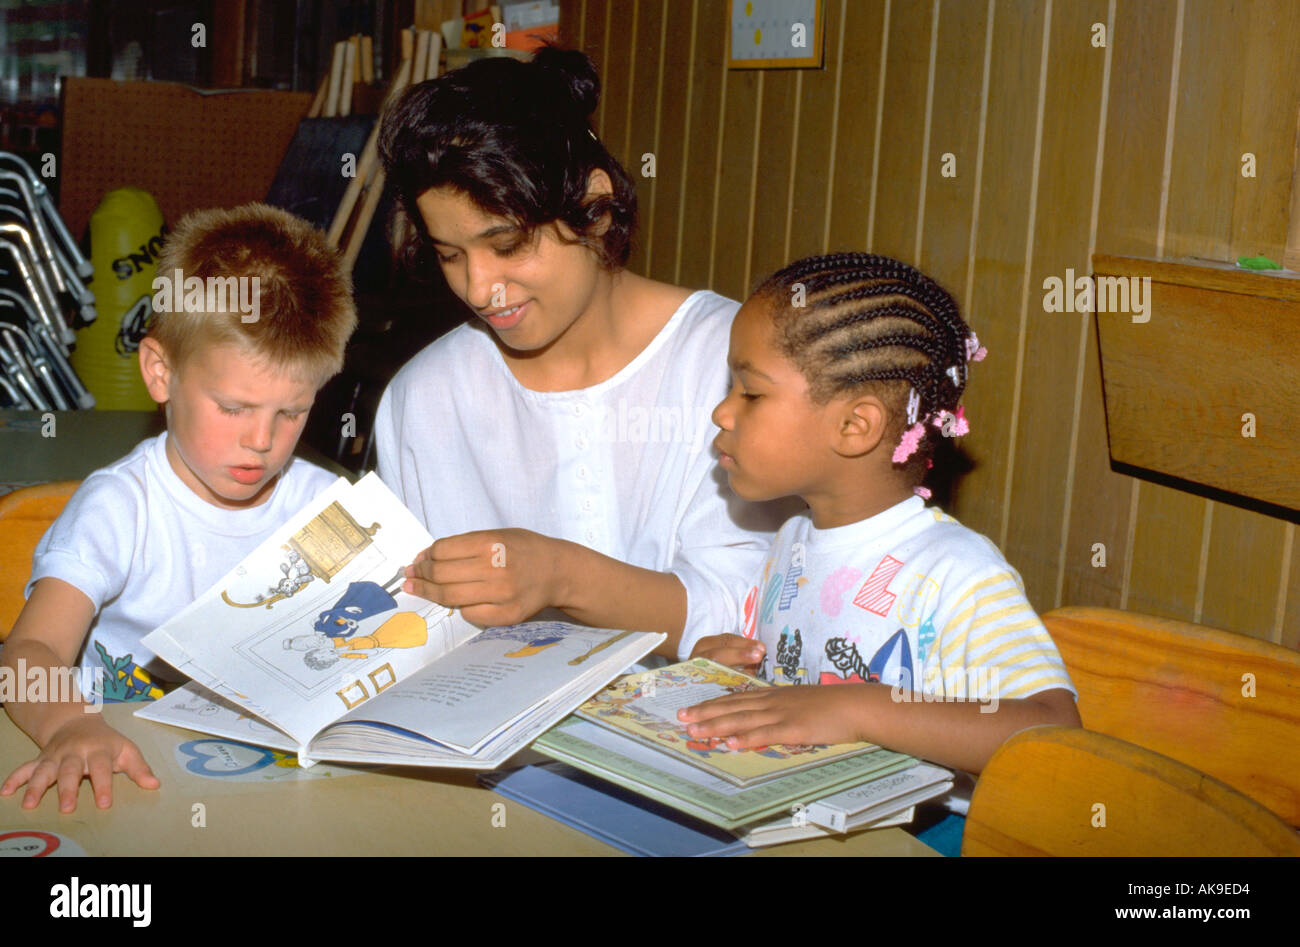 India Oriental chica de 19 años de edad libro de lectura con dos niños de menos de 5 años de edad. St Paul Minnesota, EE.UU. Foto de stock